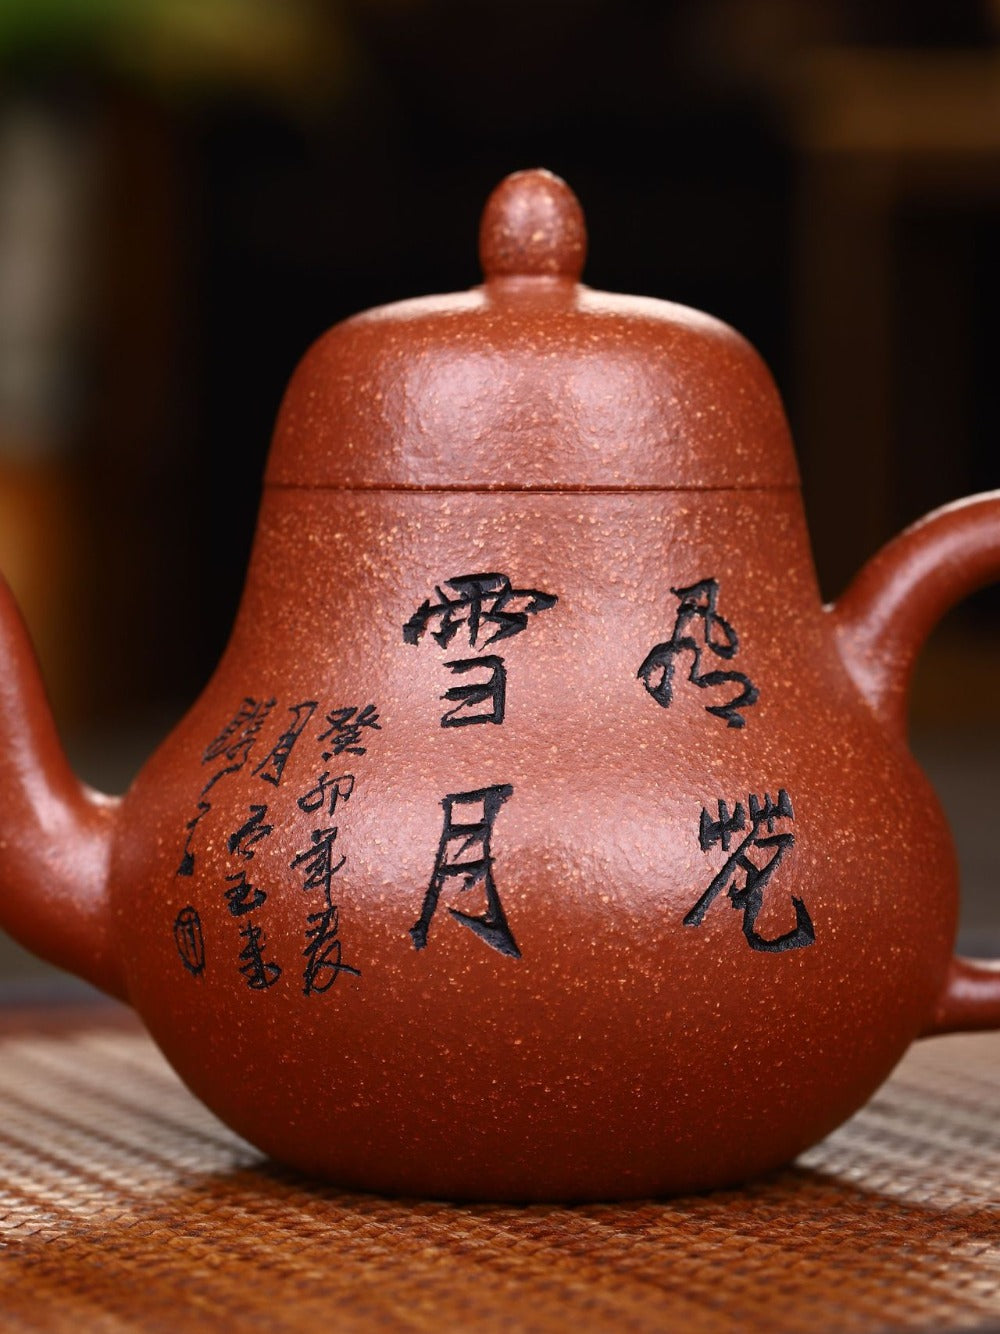 宜兴紫砂茶壶 [思婷] (鱼籽朱泥 - 240ml)